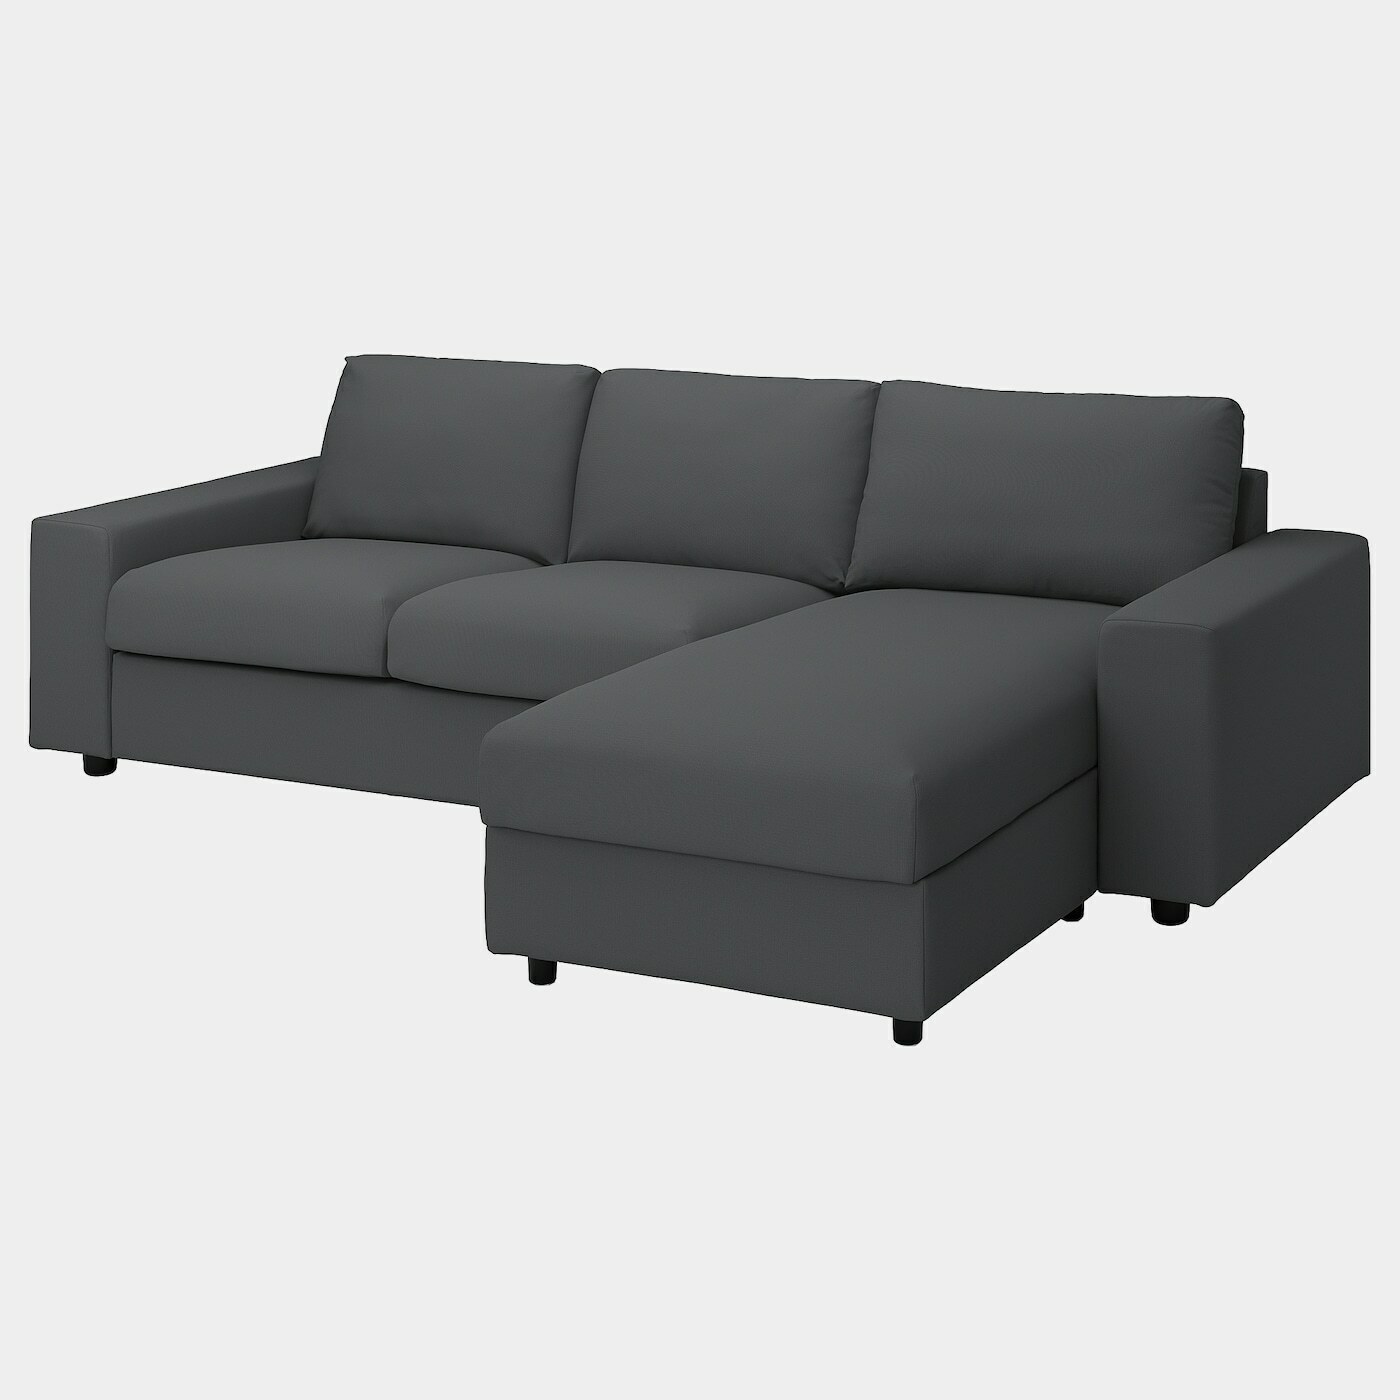 VIMLE 3er-Sofa mit Récamiere  -  - Möbel Ideen für dein Zuhause von Home Trends. Möbel Trends von Social Media Influencer für dein Skandi Zuhause.